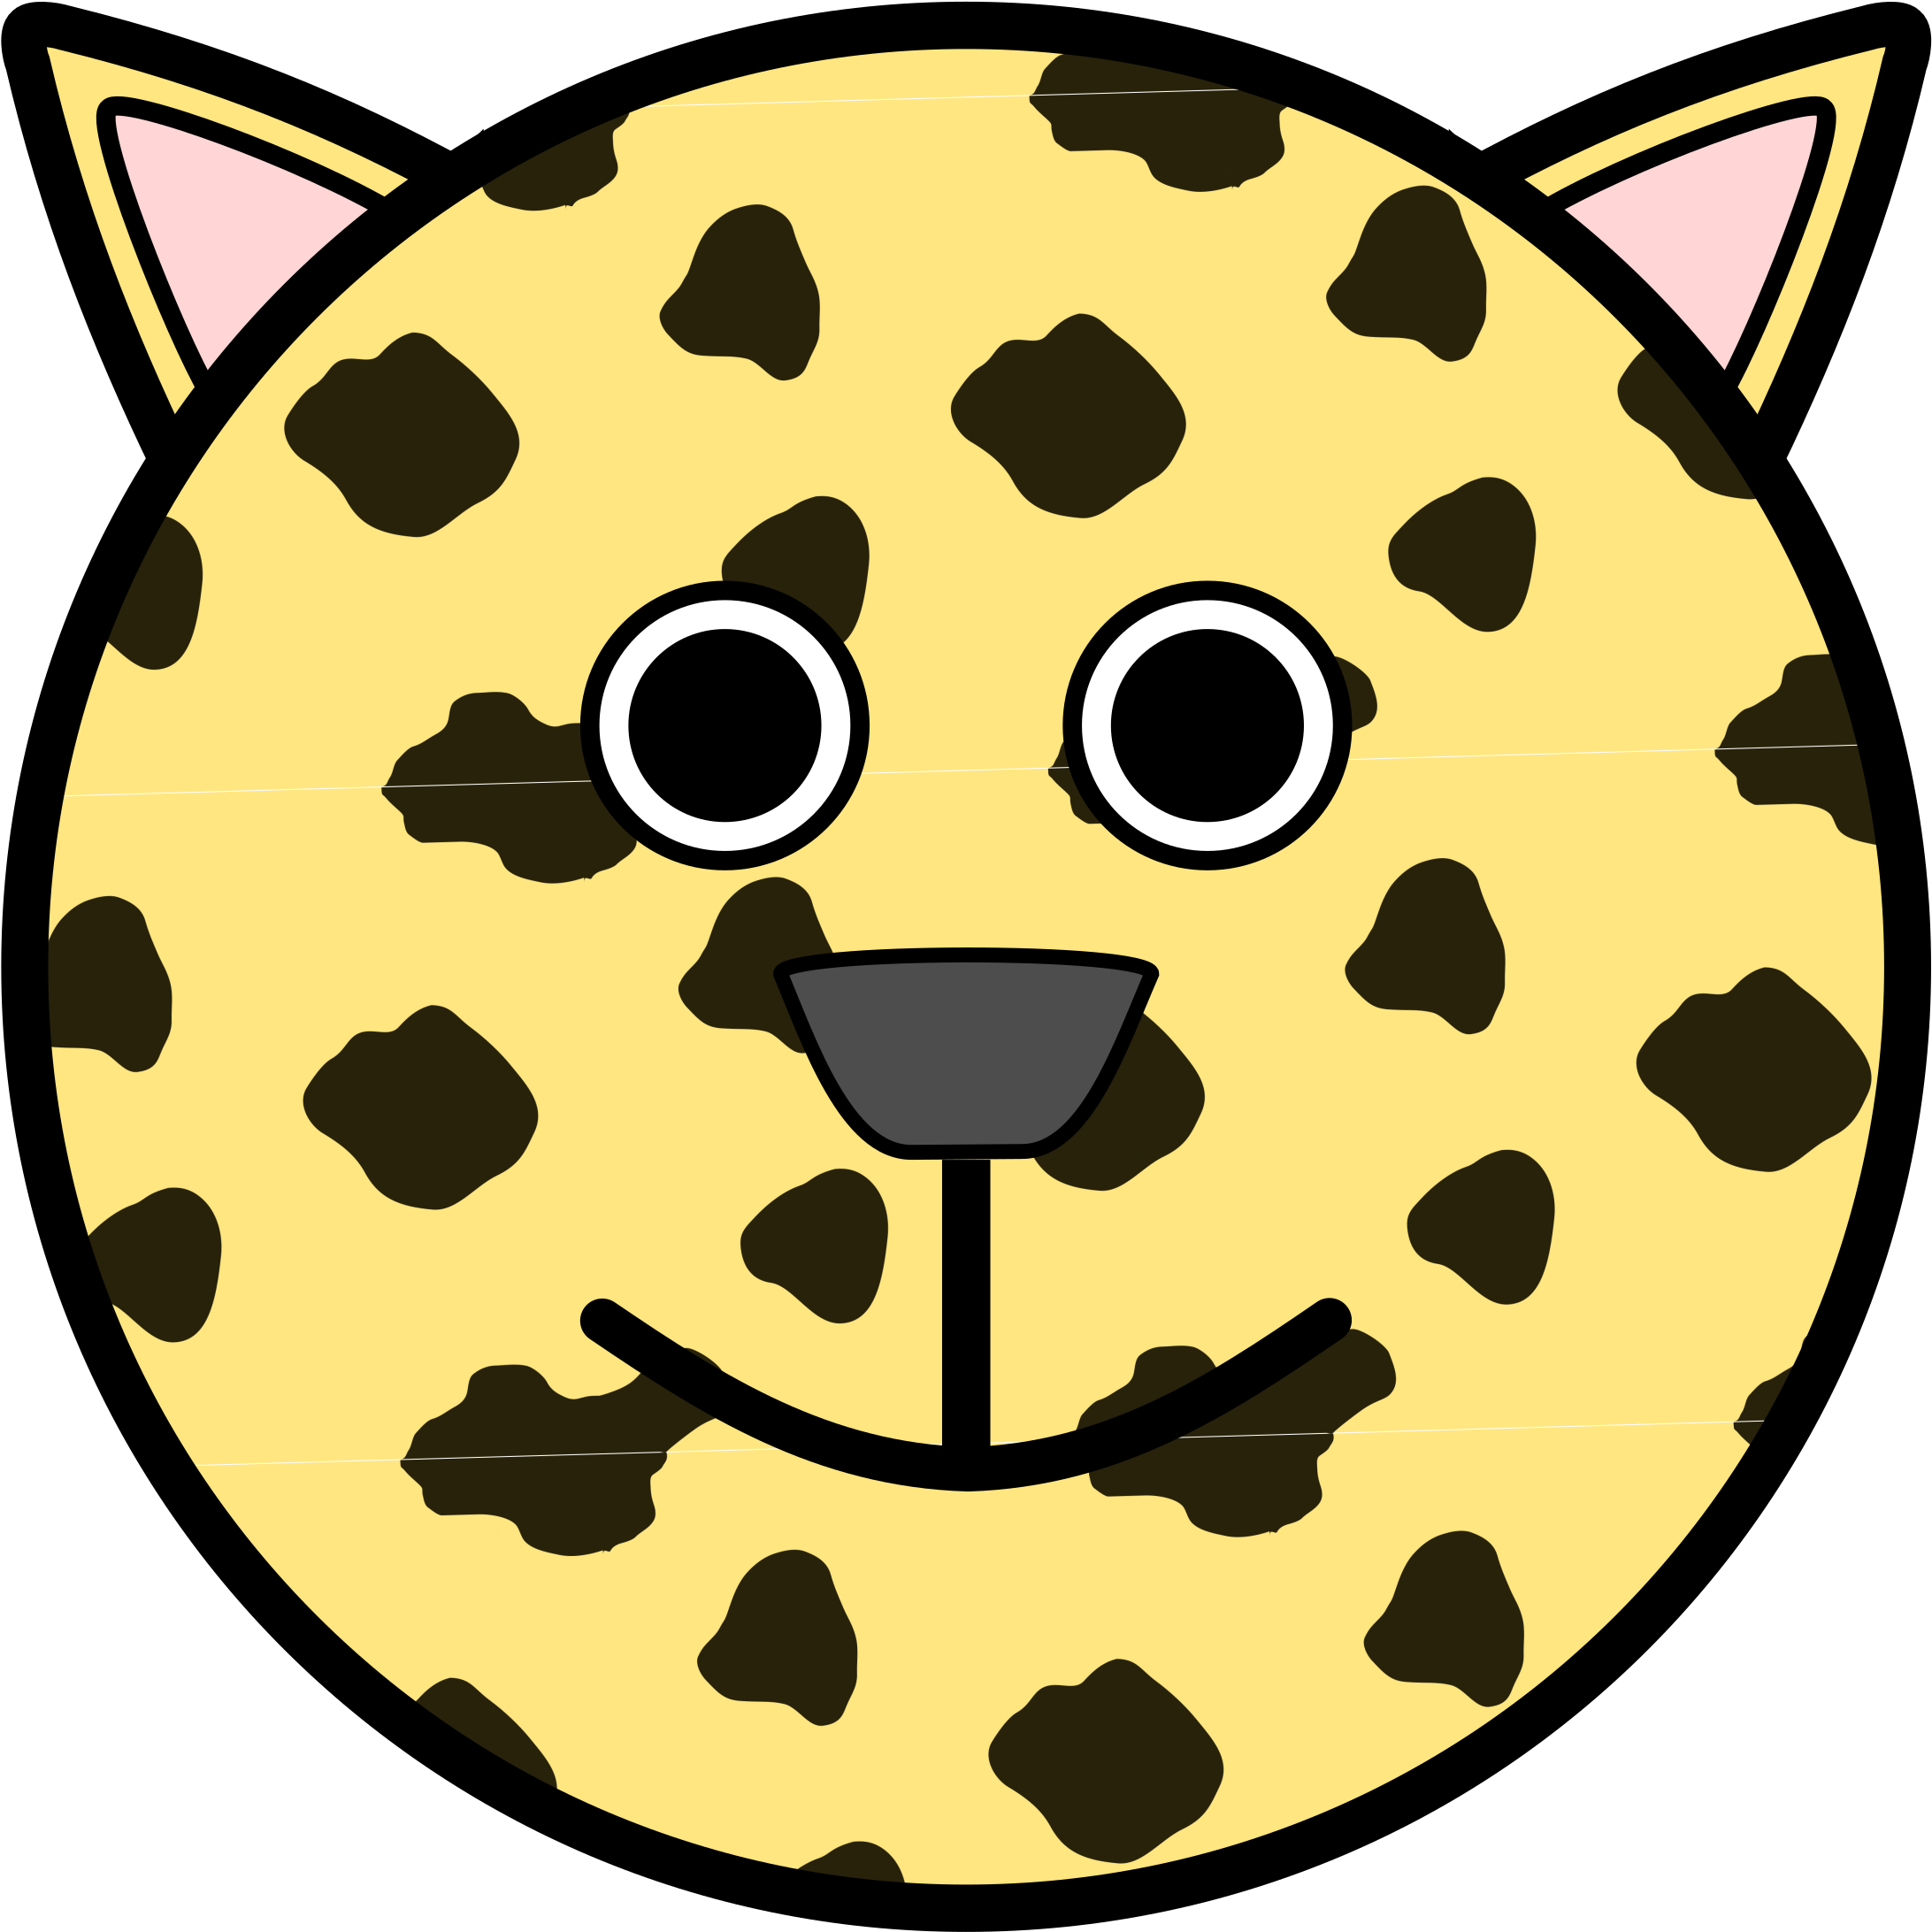 Leopard Animal Clipart Leopard1 Animal Clipart - Custom Cartoon Cheetah Face Throw Blanket (2400x2400)